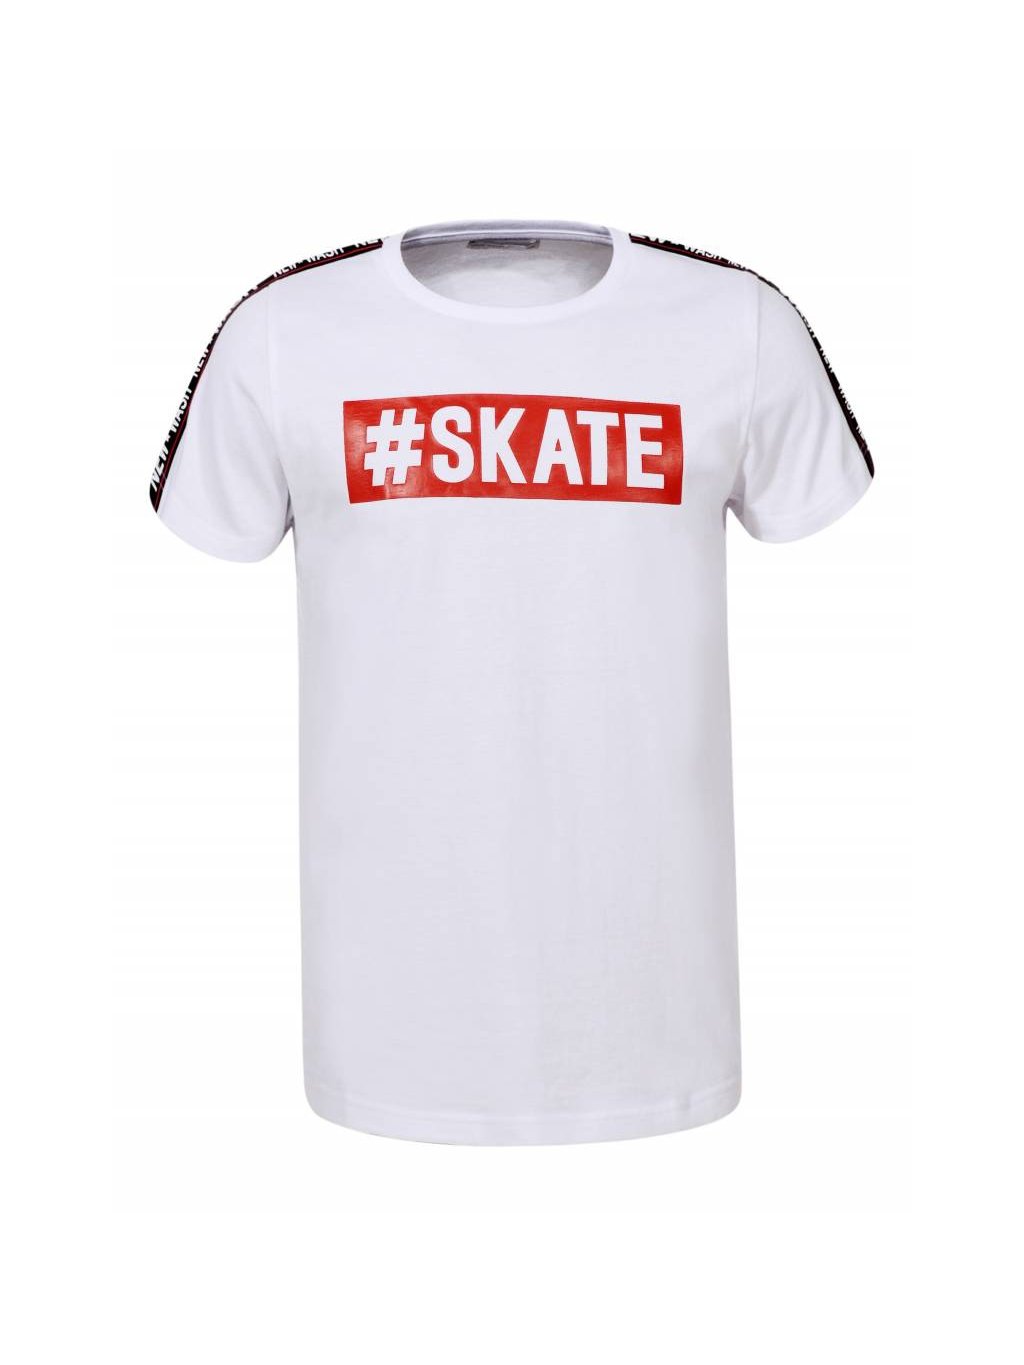 Tričko BPO-7095 #Skate/čistá